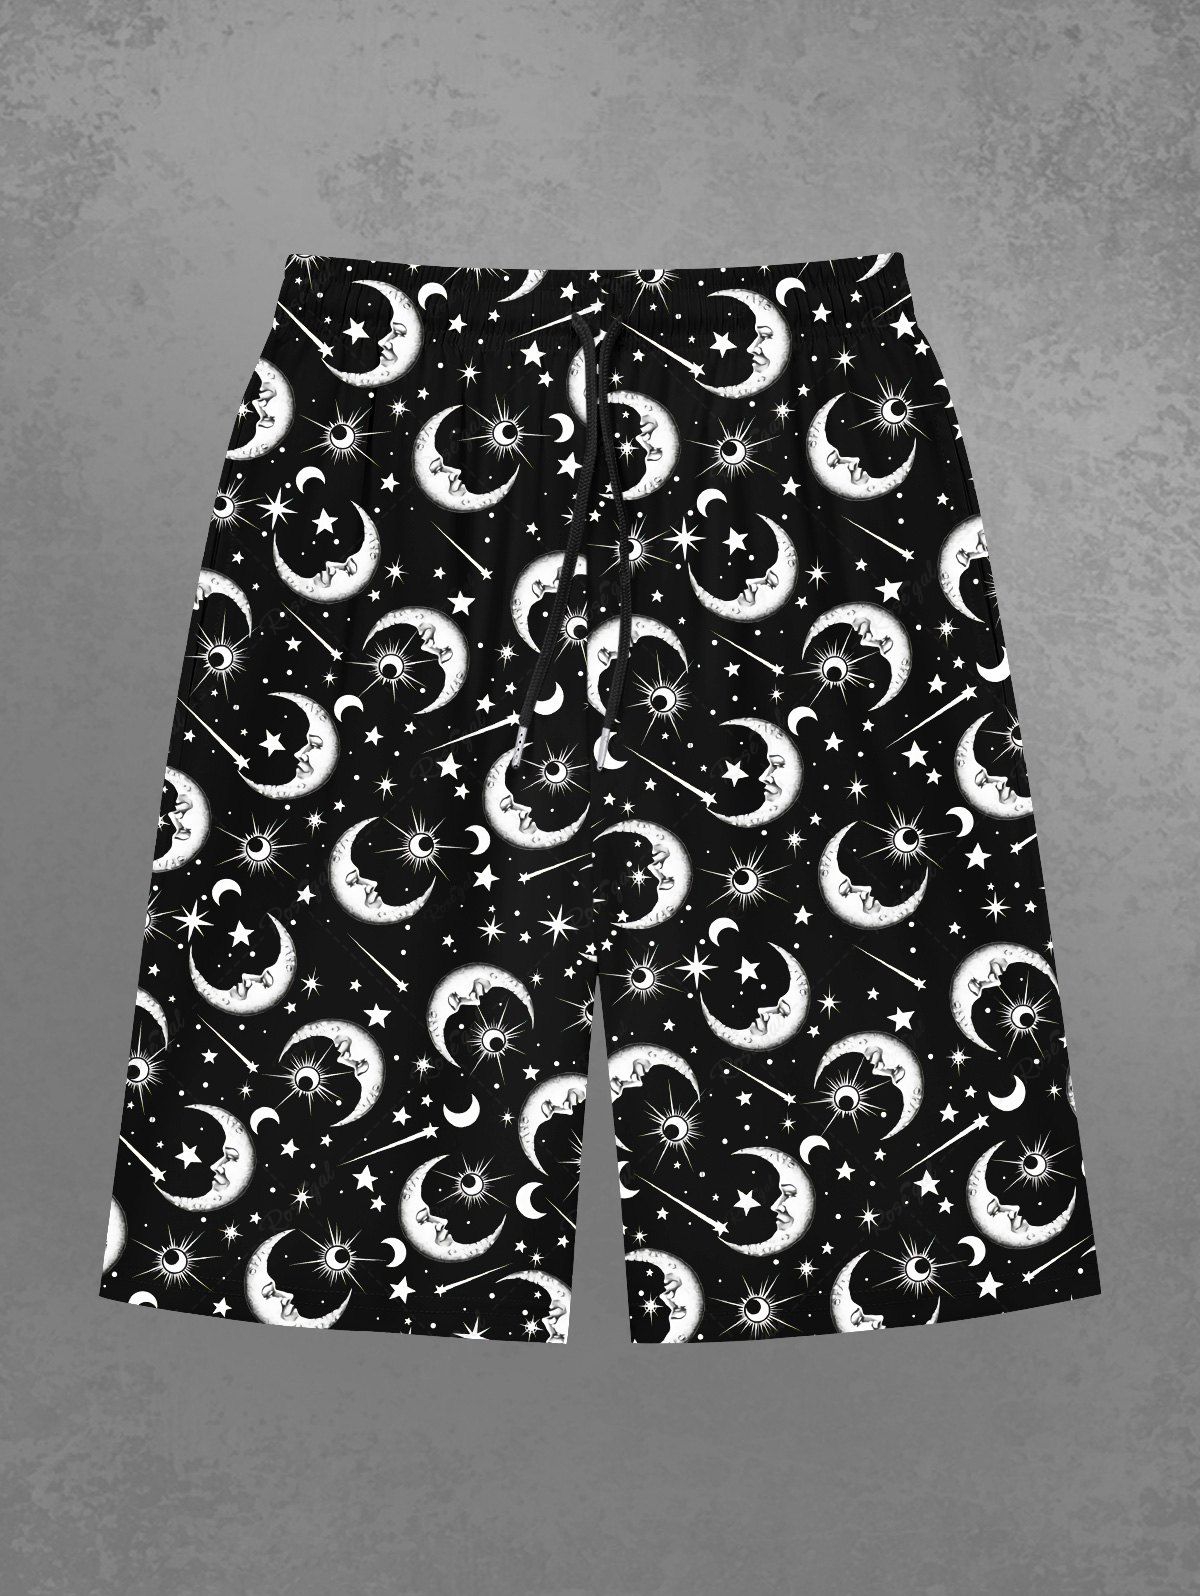 Outfit Gothic Galaxy Moon Sun Star Print Beach Shorts For Men  